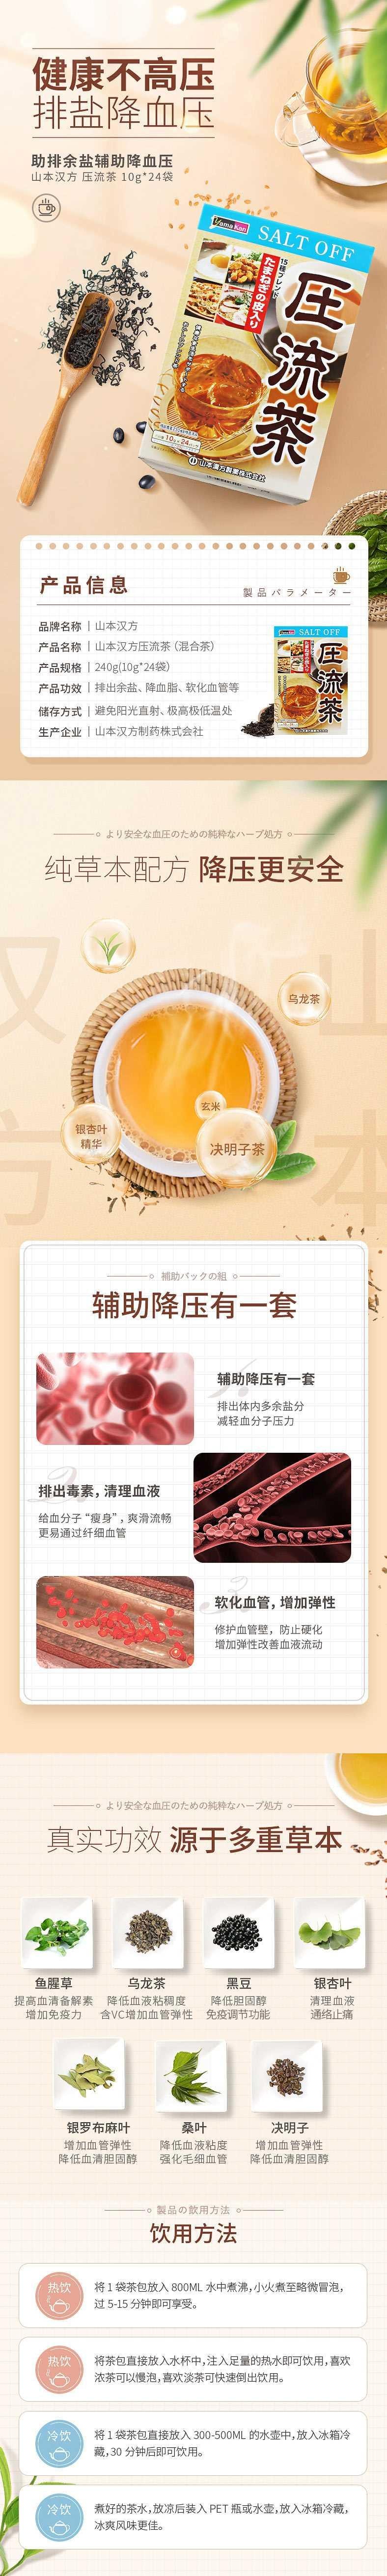 【日本直邮】YAMAMOTO山本汉方制药 压流茶 10g*24包入 天然植物饮食健康茶